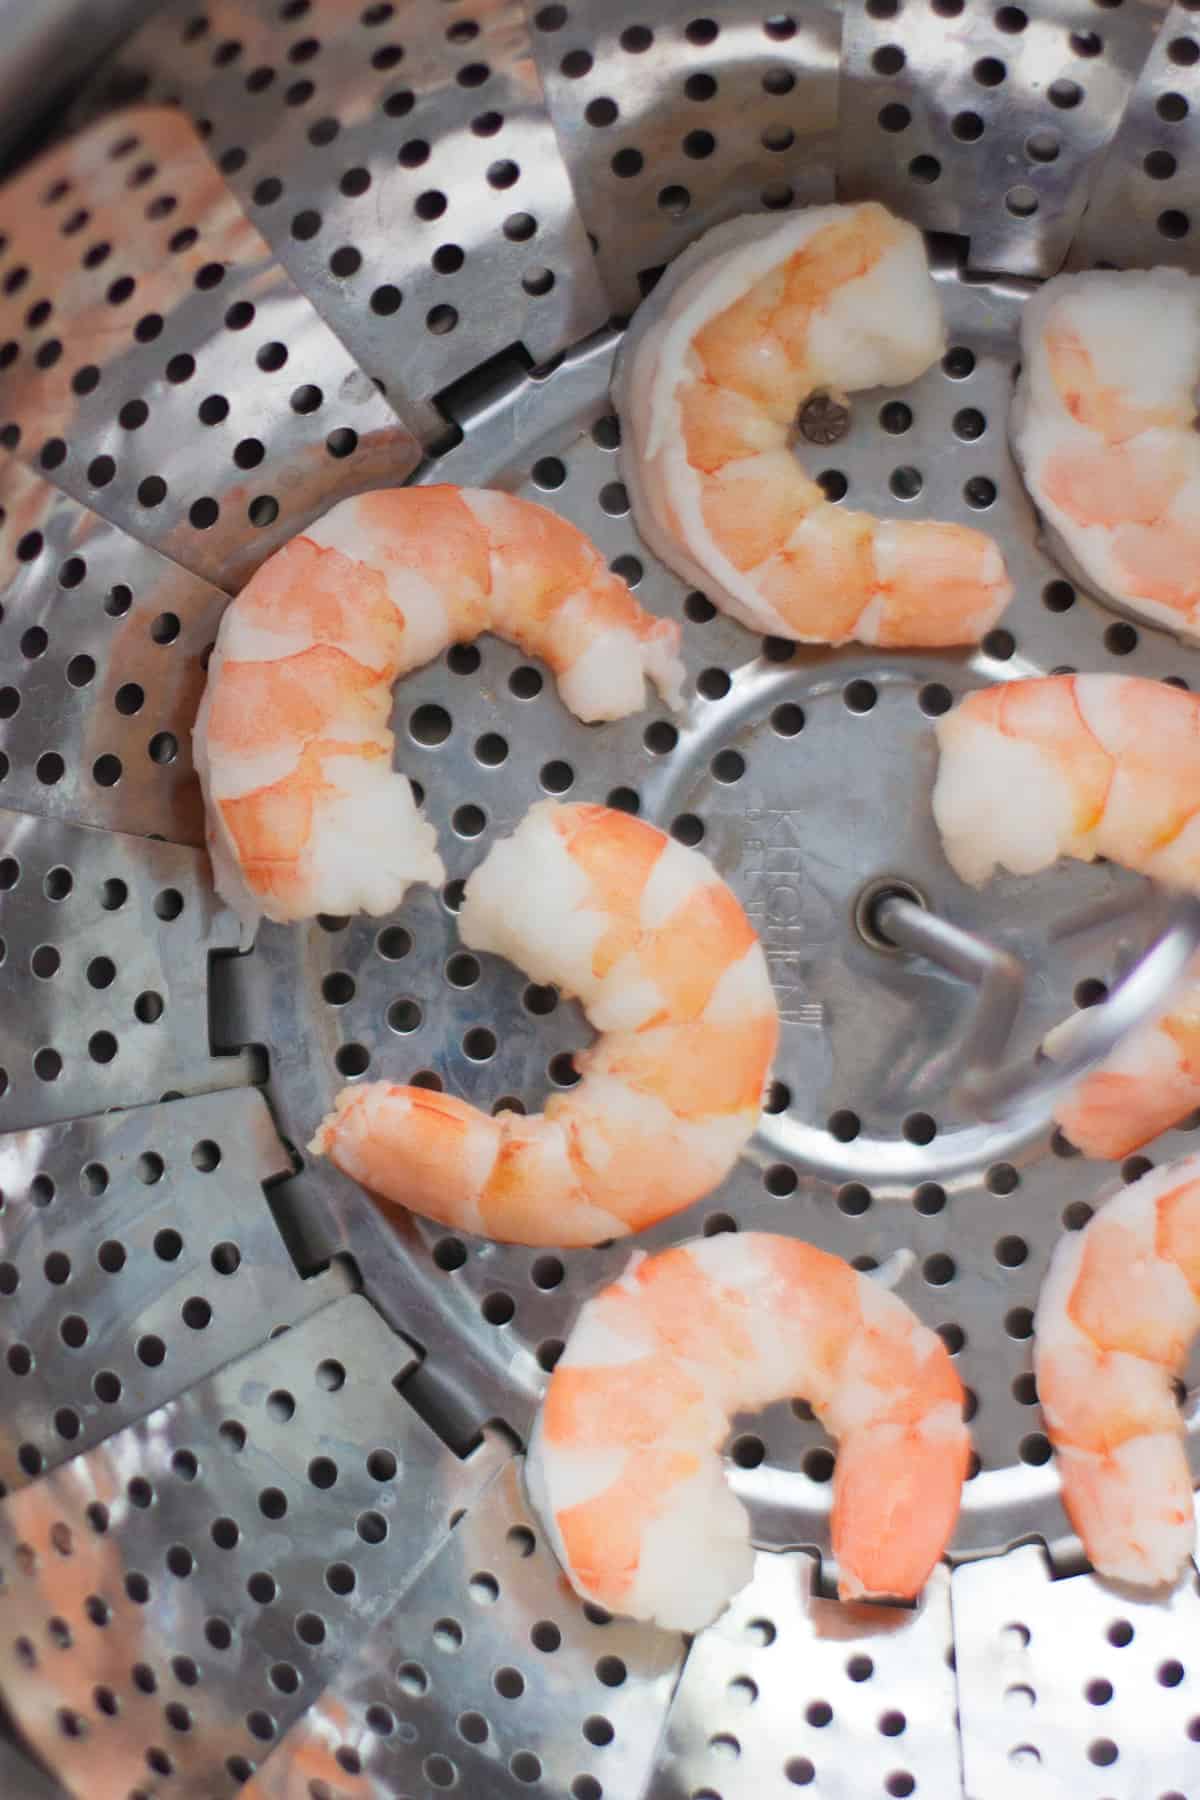 Steamed shrimps in a steamer basket.